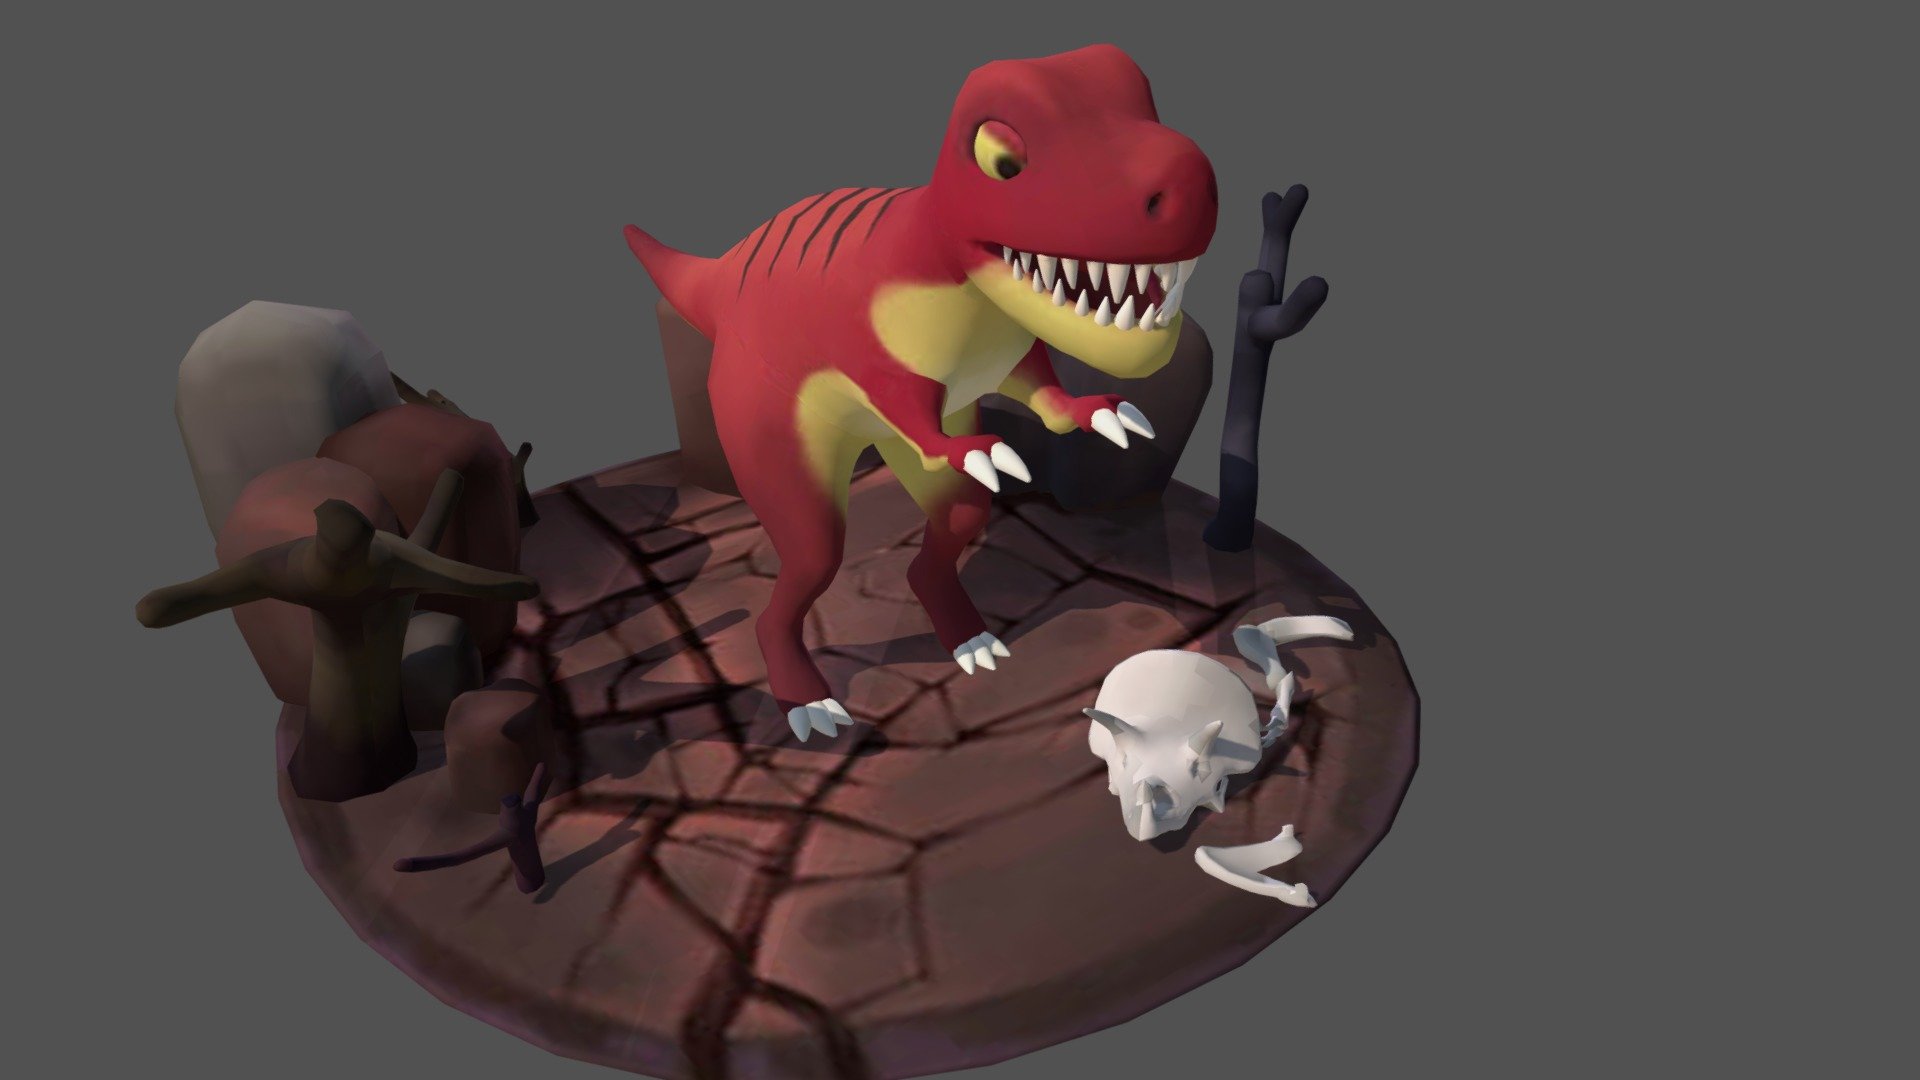 dinosaur07 - 3D model by 3dmonster 3d model